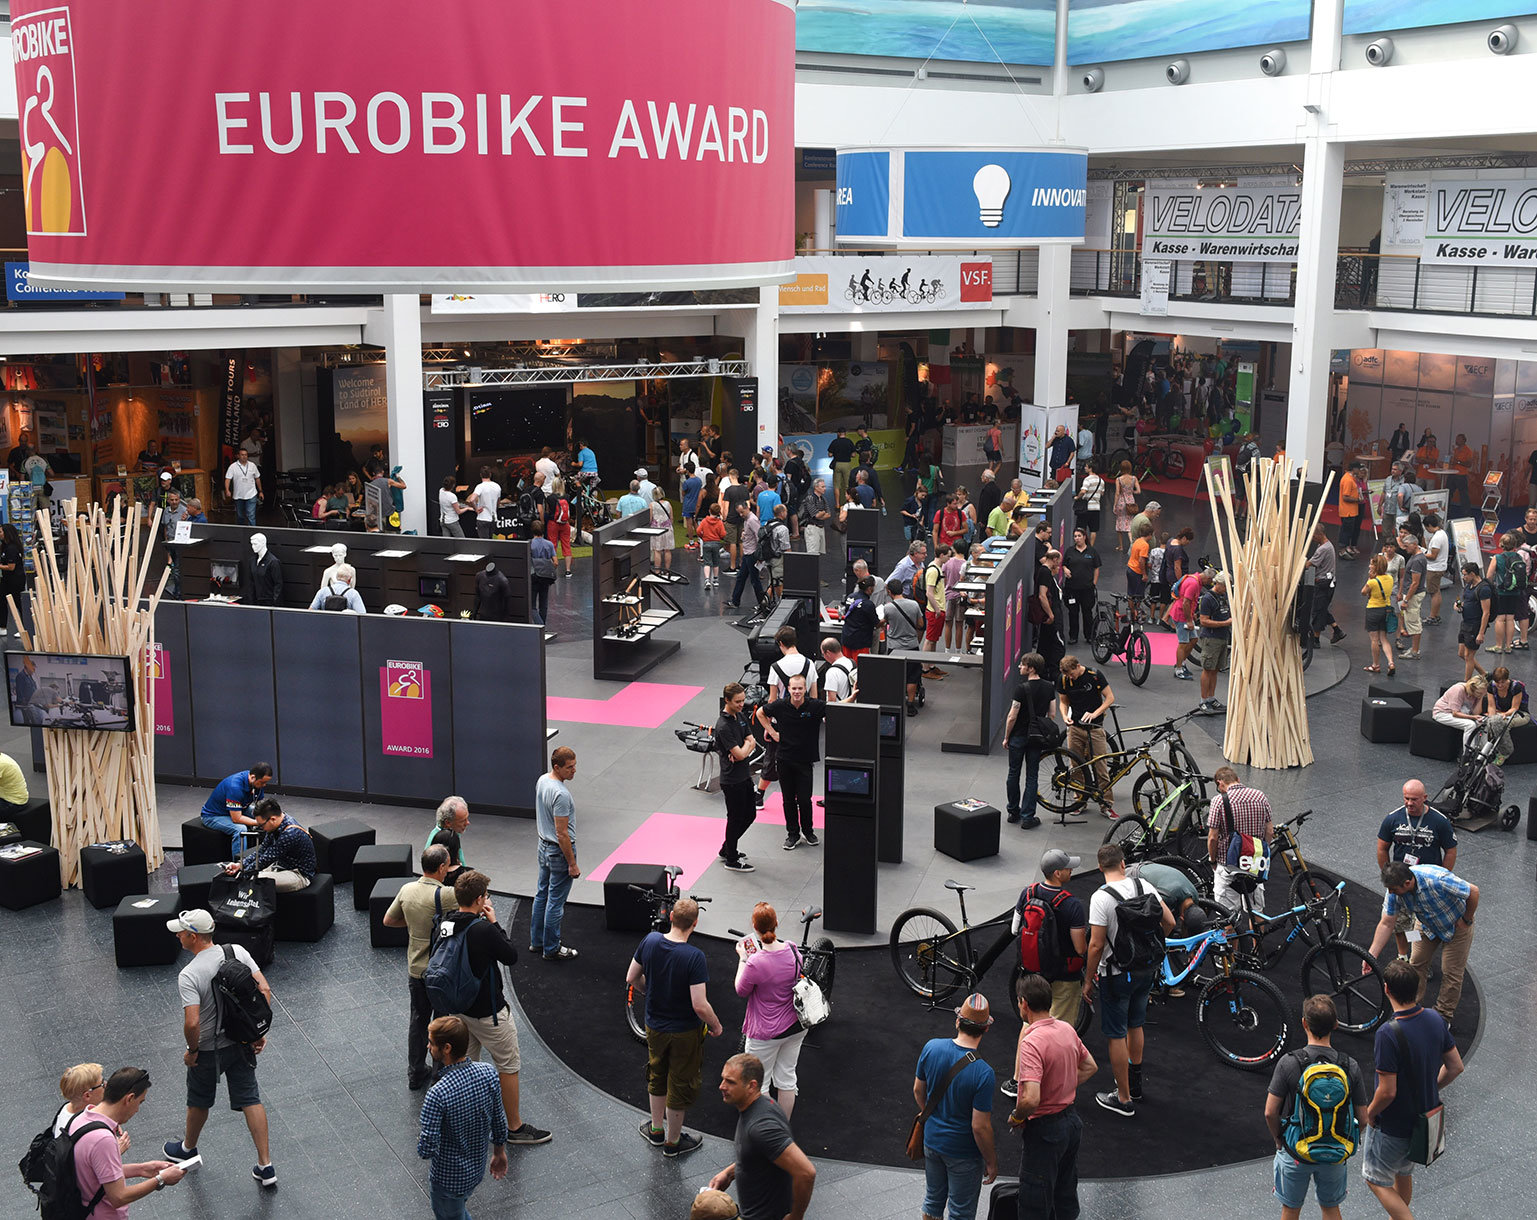 Eurobike Award registration is open!